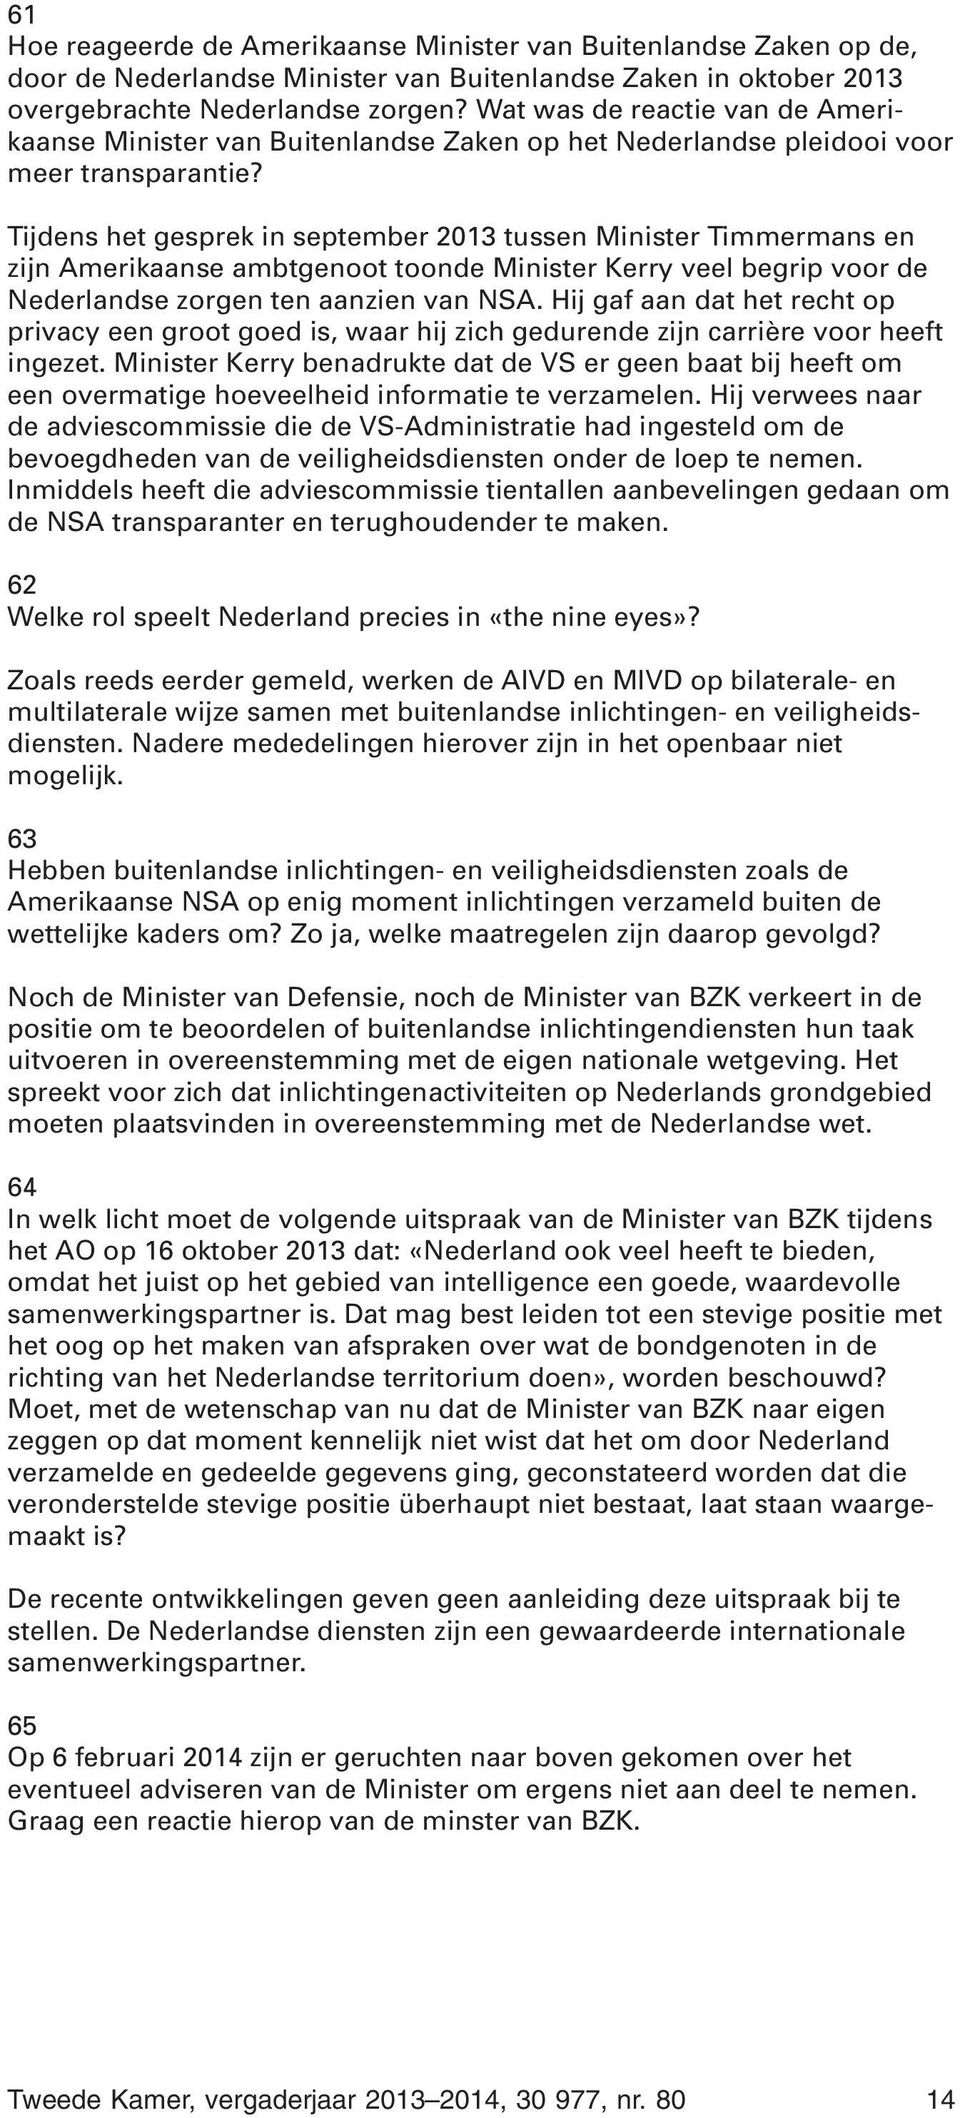 Tijdens het gesprek in september 2013 tussen Minister Timmermans en zijn Amerikaanse ambtgenoot toonde Minister Kerry veel begrip voor de Nederlandse zorgen ten aanzien van NSA.